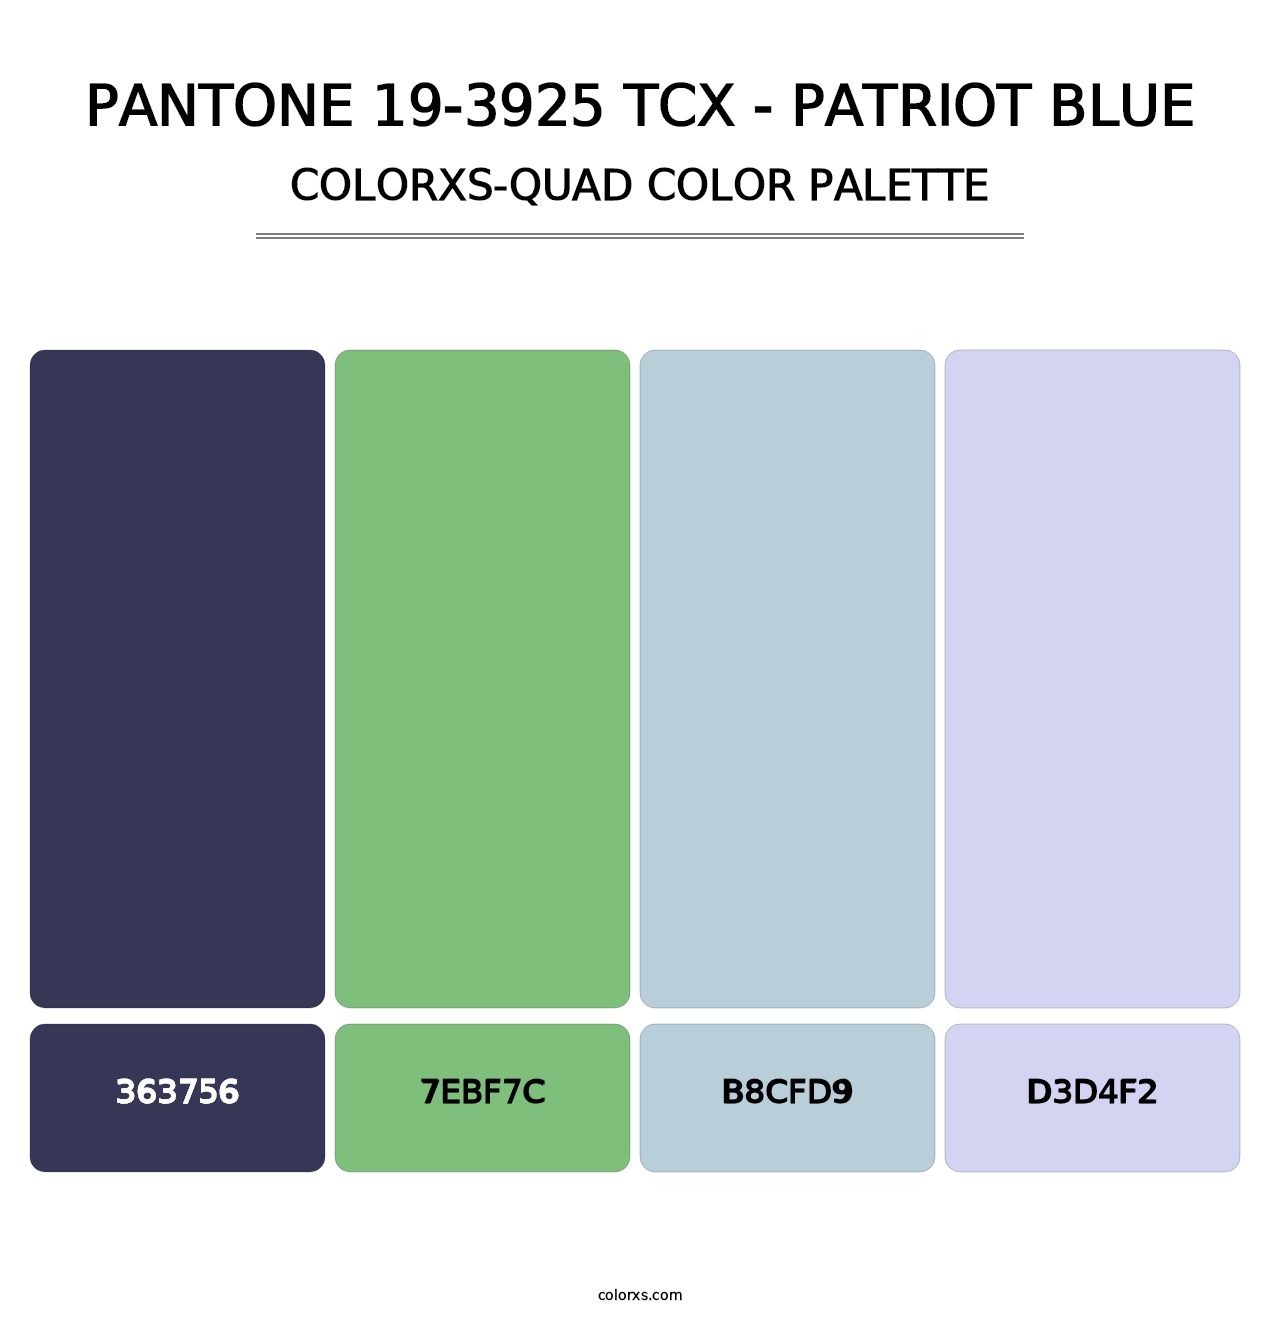 PANTONE 19-3925 TCX - Patriot Blue - Colorxs Quad Palette